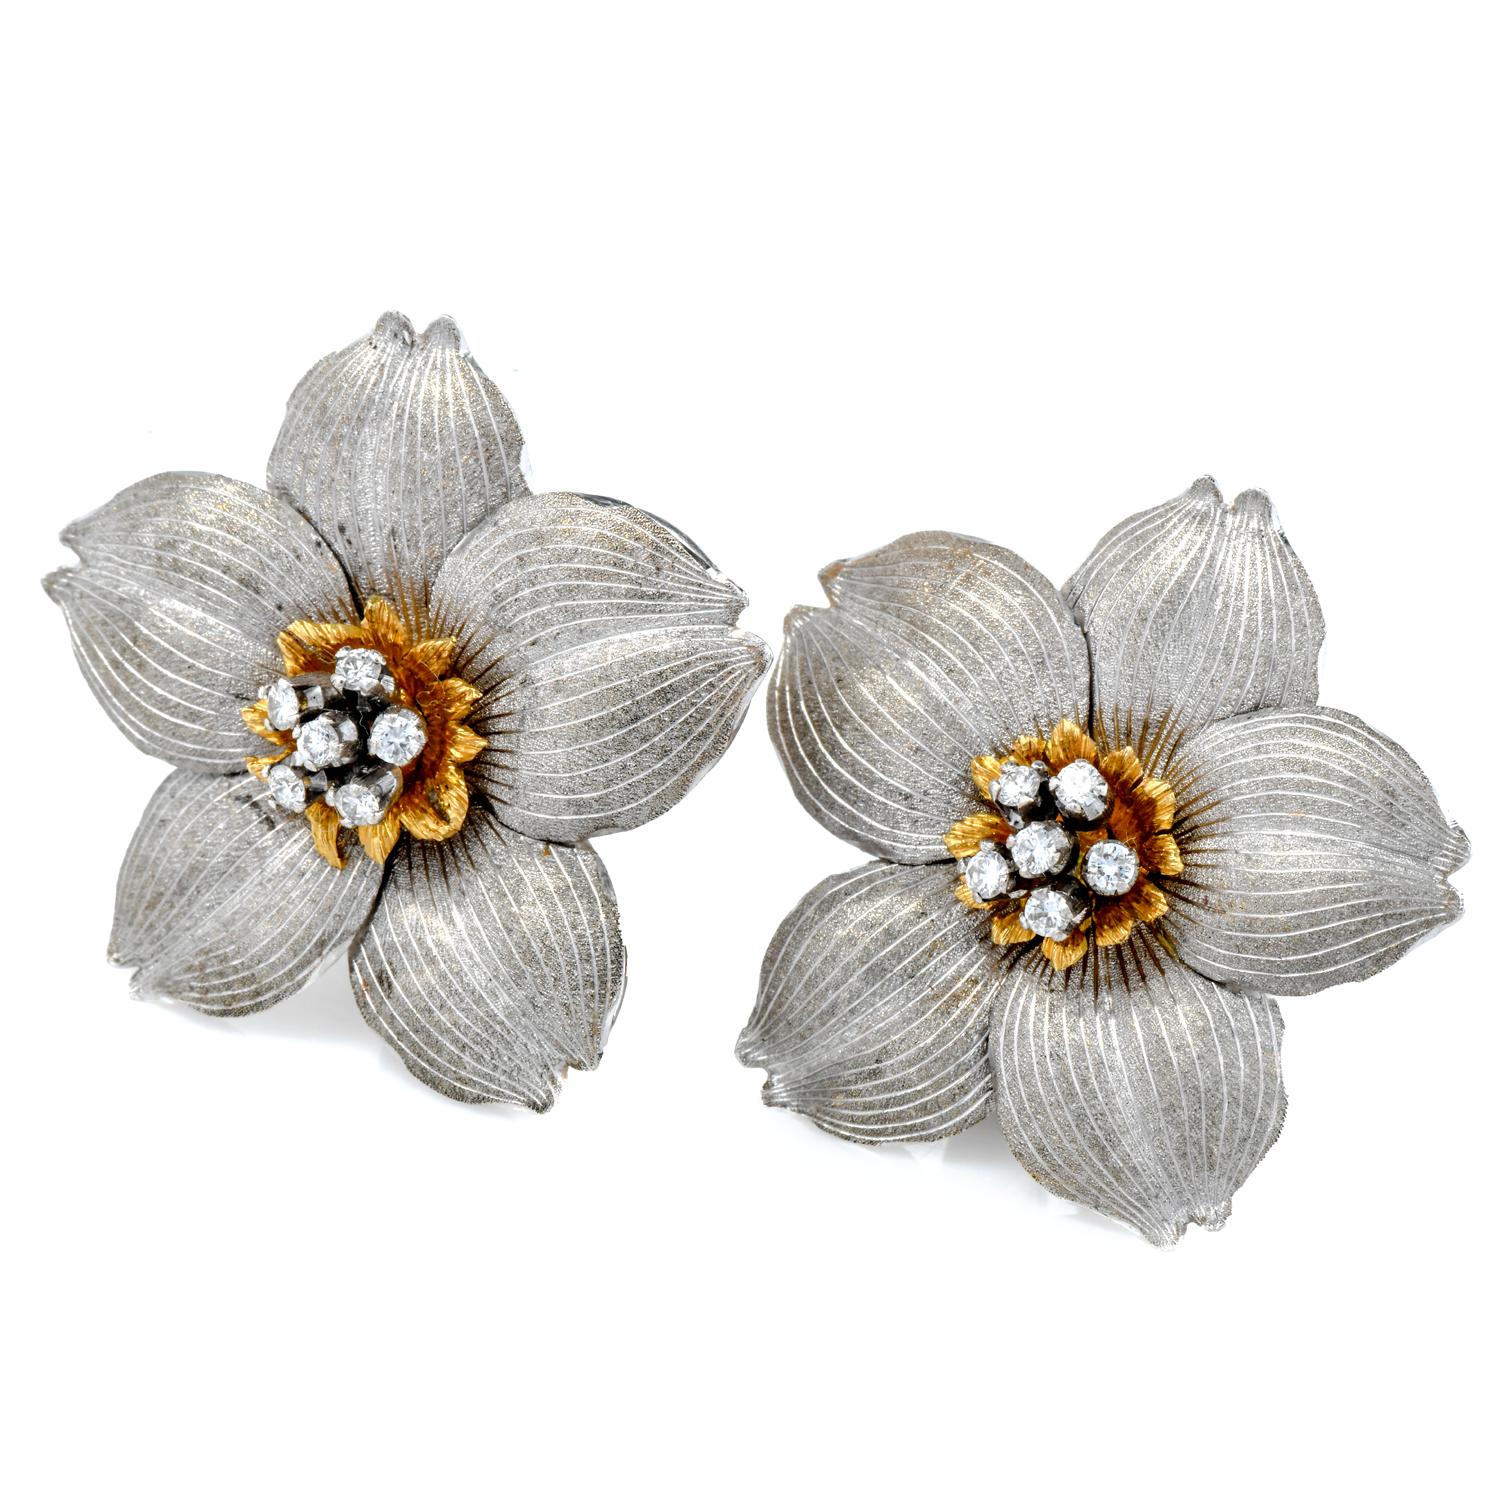 Diese eleganten Ohrringe mit Blumenmotiv von Buccellati sind aus einer Kombination von 18 K Gelb- und 18 K Weißgold gefertigt.

Diese italienischen Clip-on Ohrringe sind durch (12) Round Cut Echte Diamanten zentriert, messen gemeinsam 0,25 Karat und